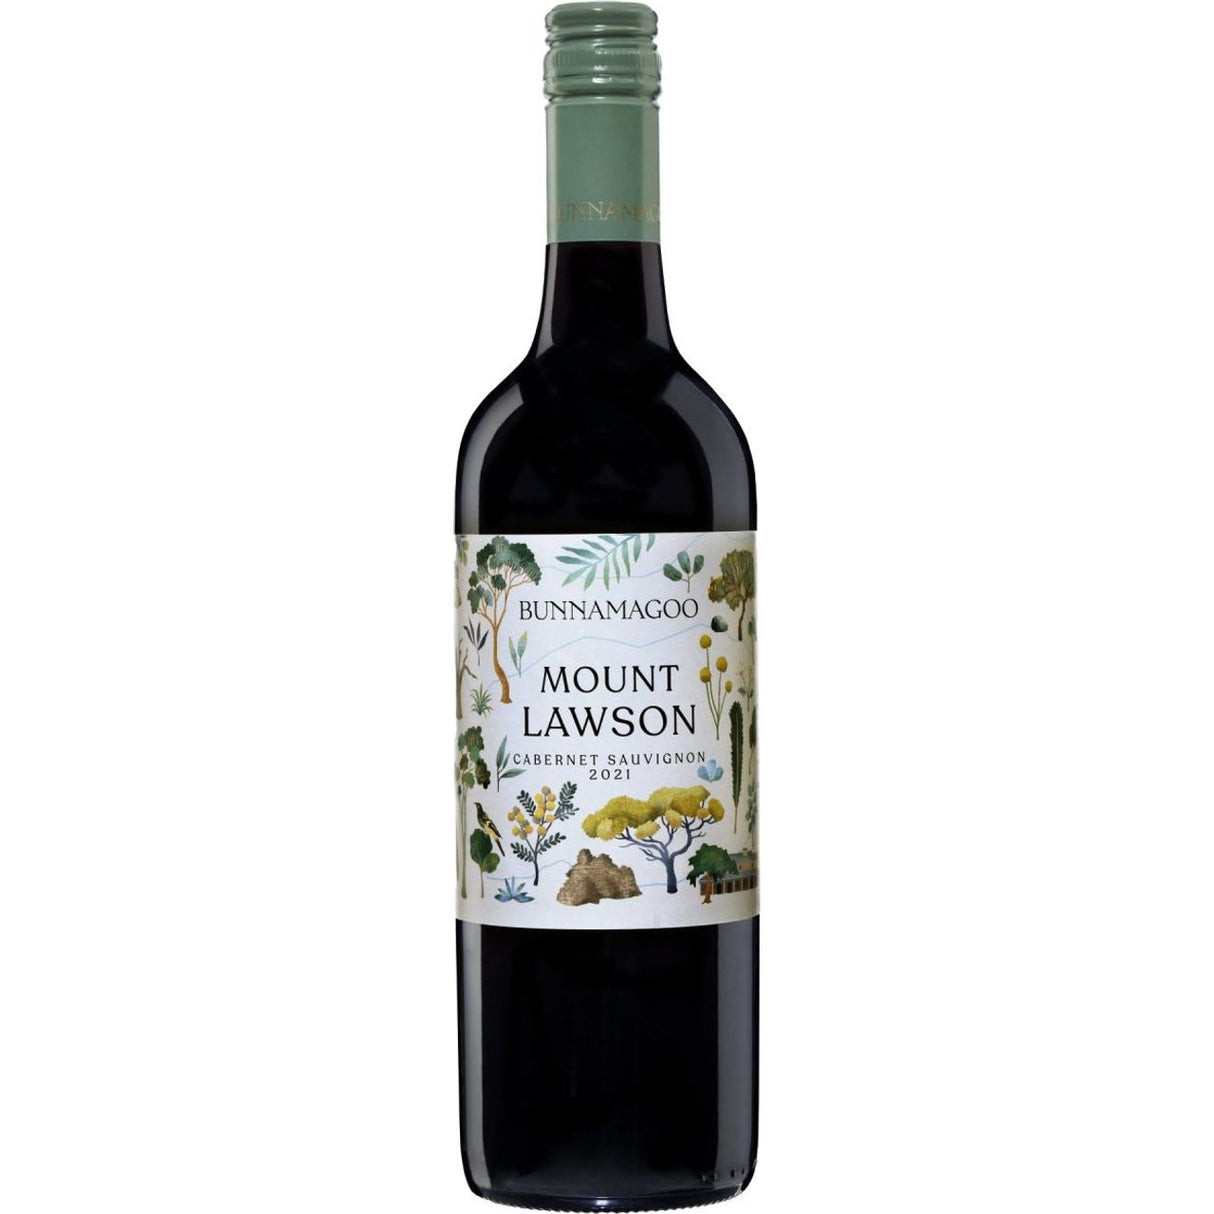 Mount Lawson Cabernet Sauvignon 2021 (12 bottles)